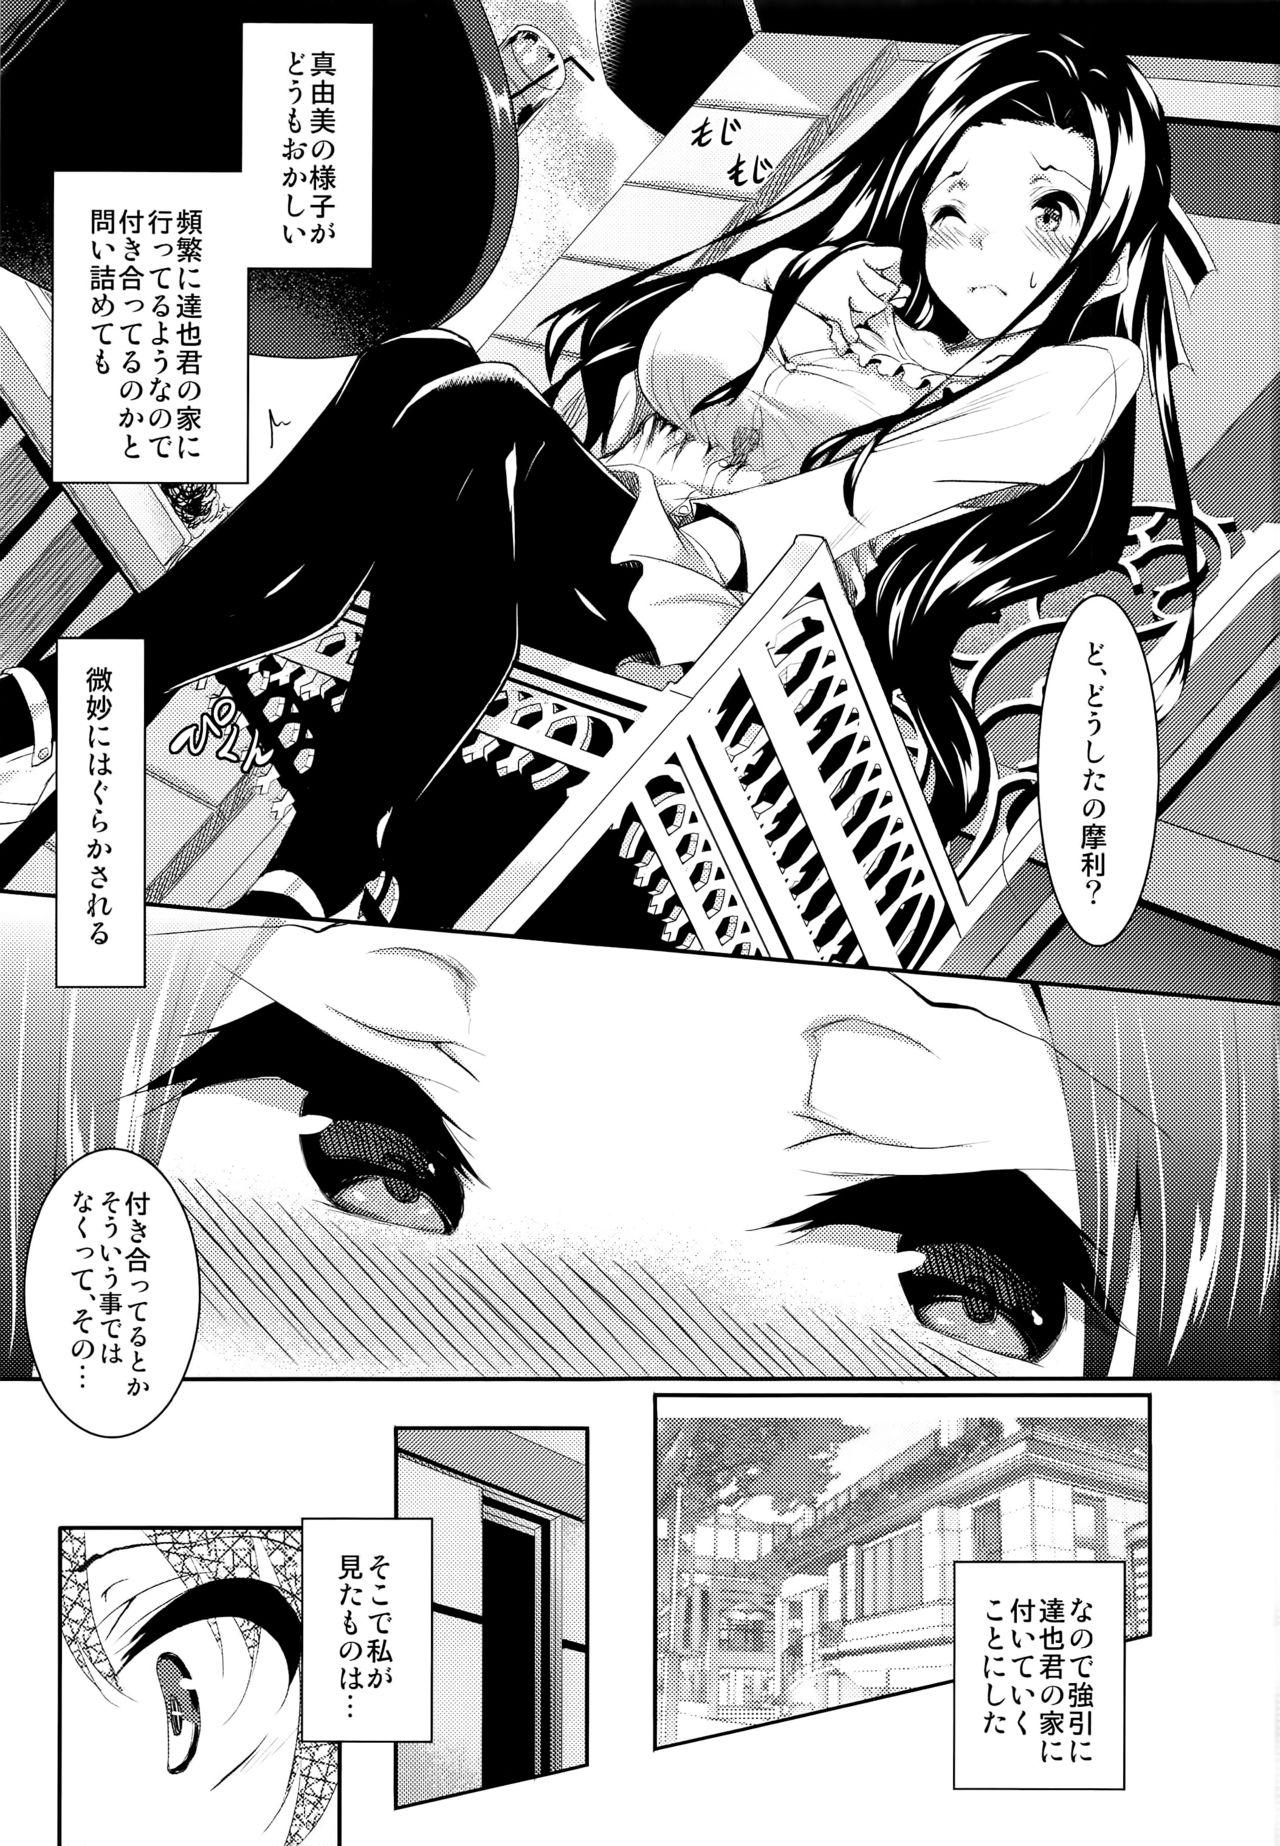 Real Orgasms Sasuoni! 4 - Mahouka koukou no rettousei Morena - Page 3